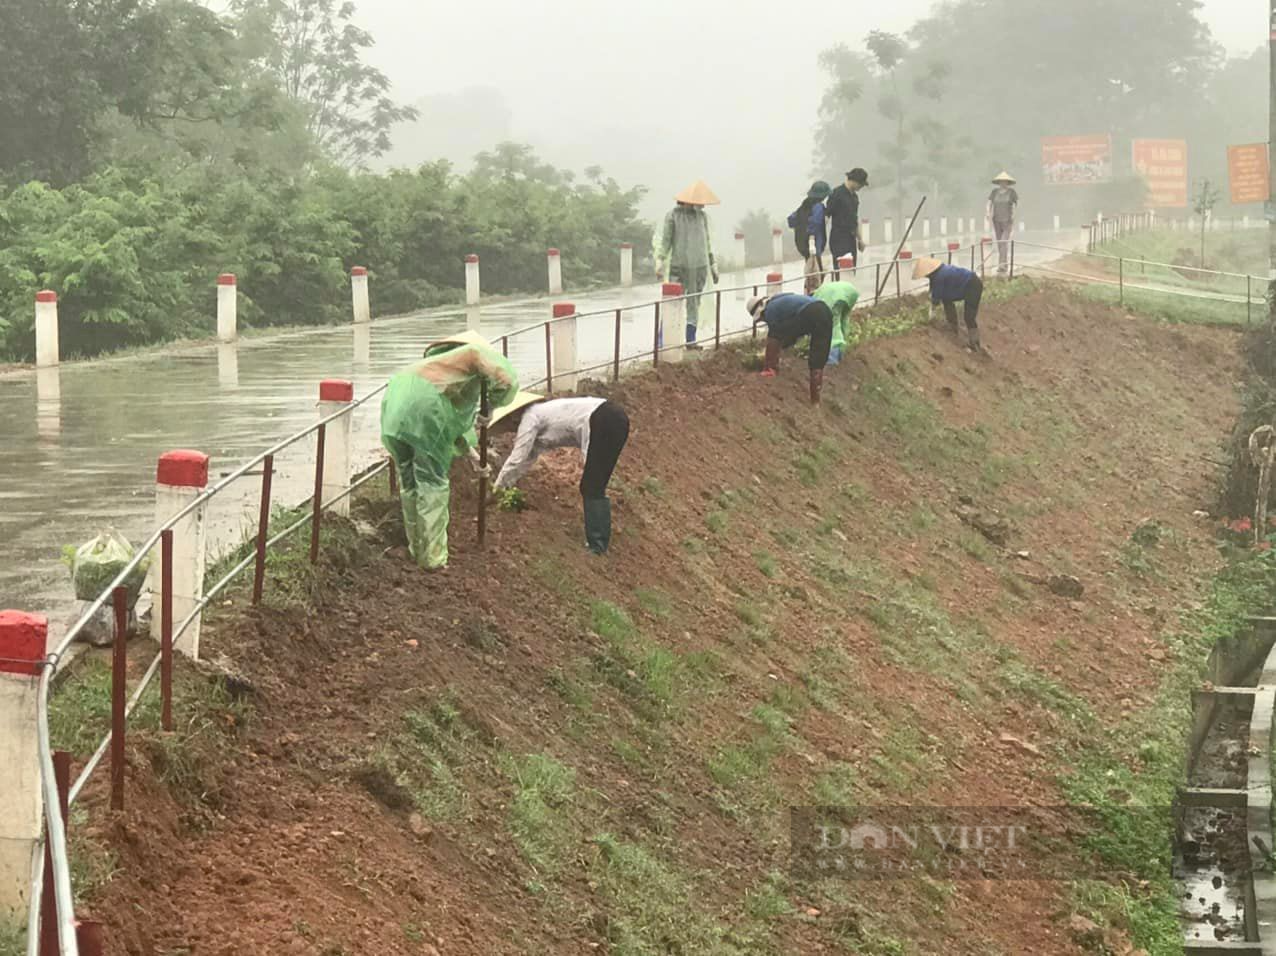 Phú Bình, Thái Nguyên: Hàng chục nghìn người ra quân vệ sinh môi trường, làm sạch đường làng, ngõ xóm, xây dựng nông thôn mới - Ảnh 3.